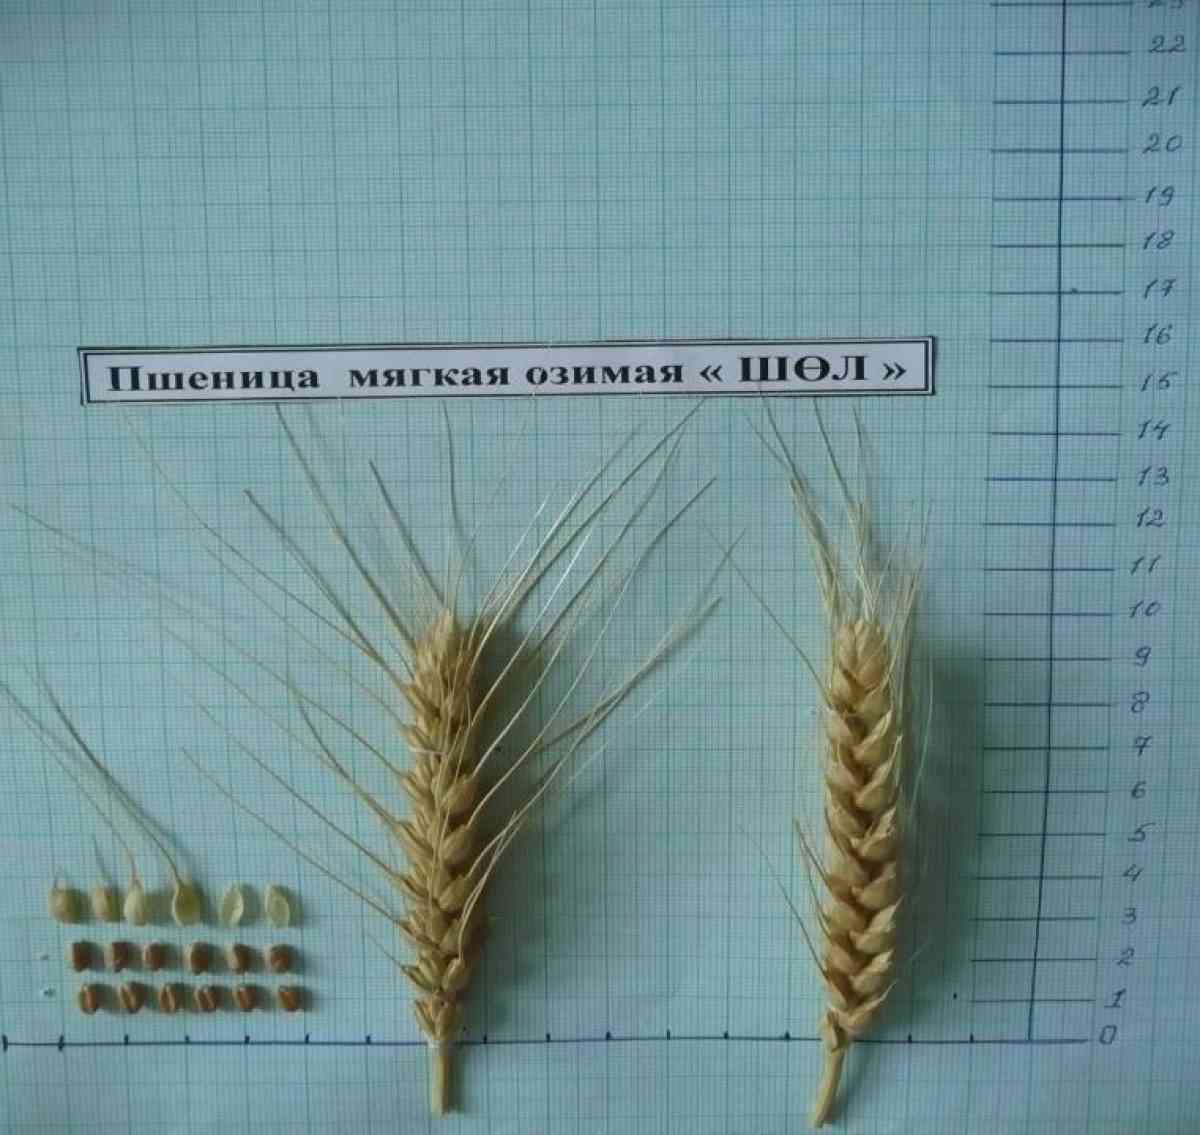 Новый сорт озимой пшеницы "Шөл" вывели казахстанские ученые